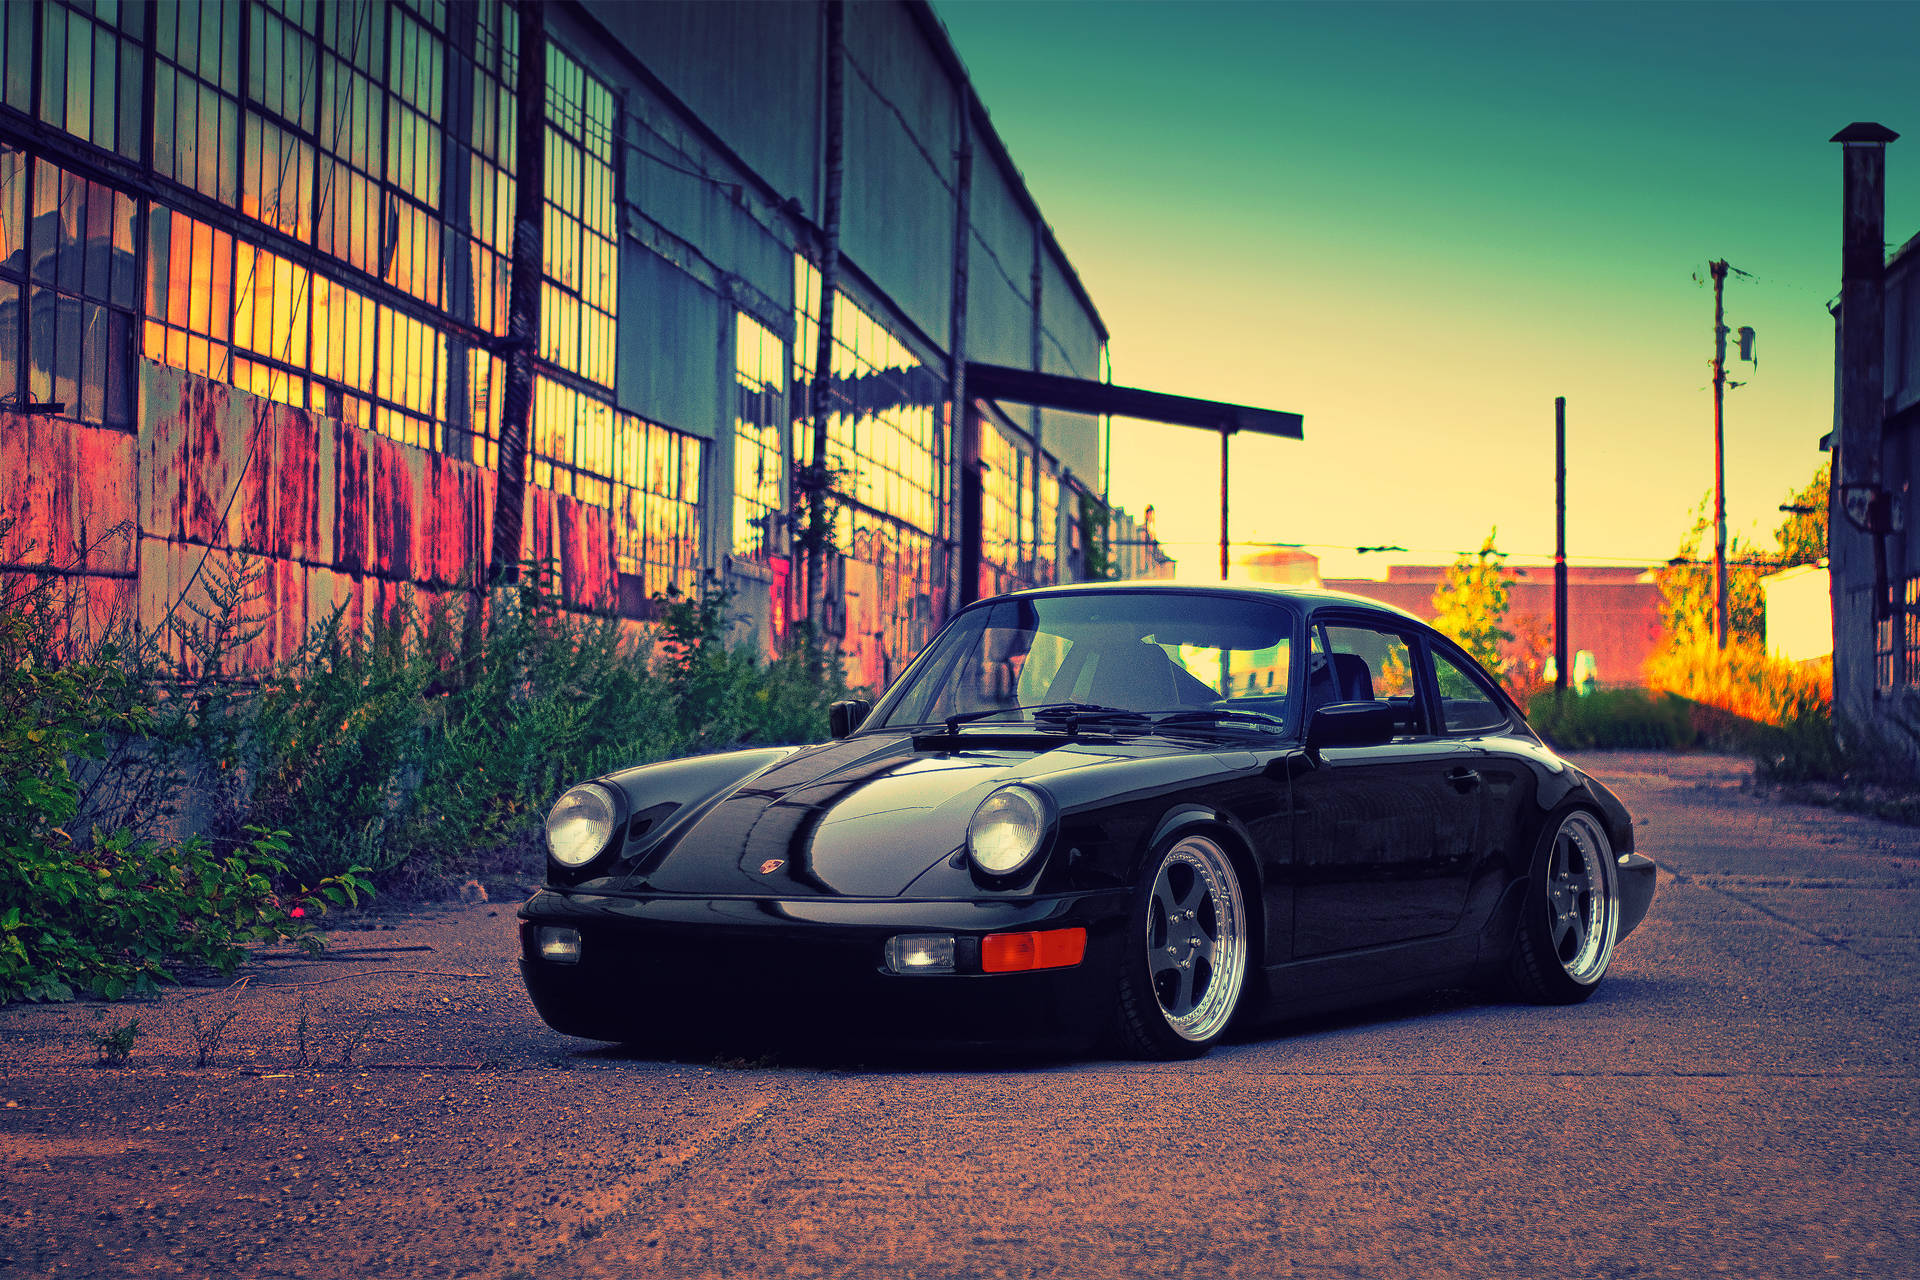 Black Porsche 964 In Sunset